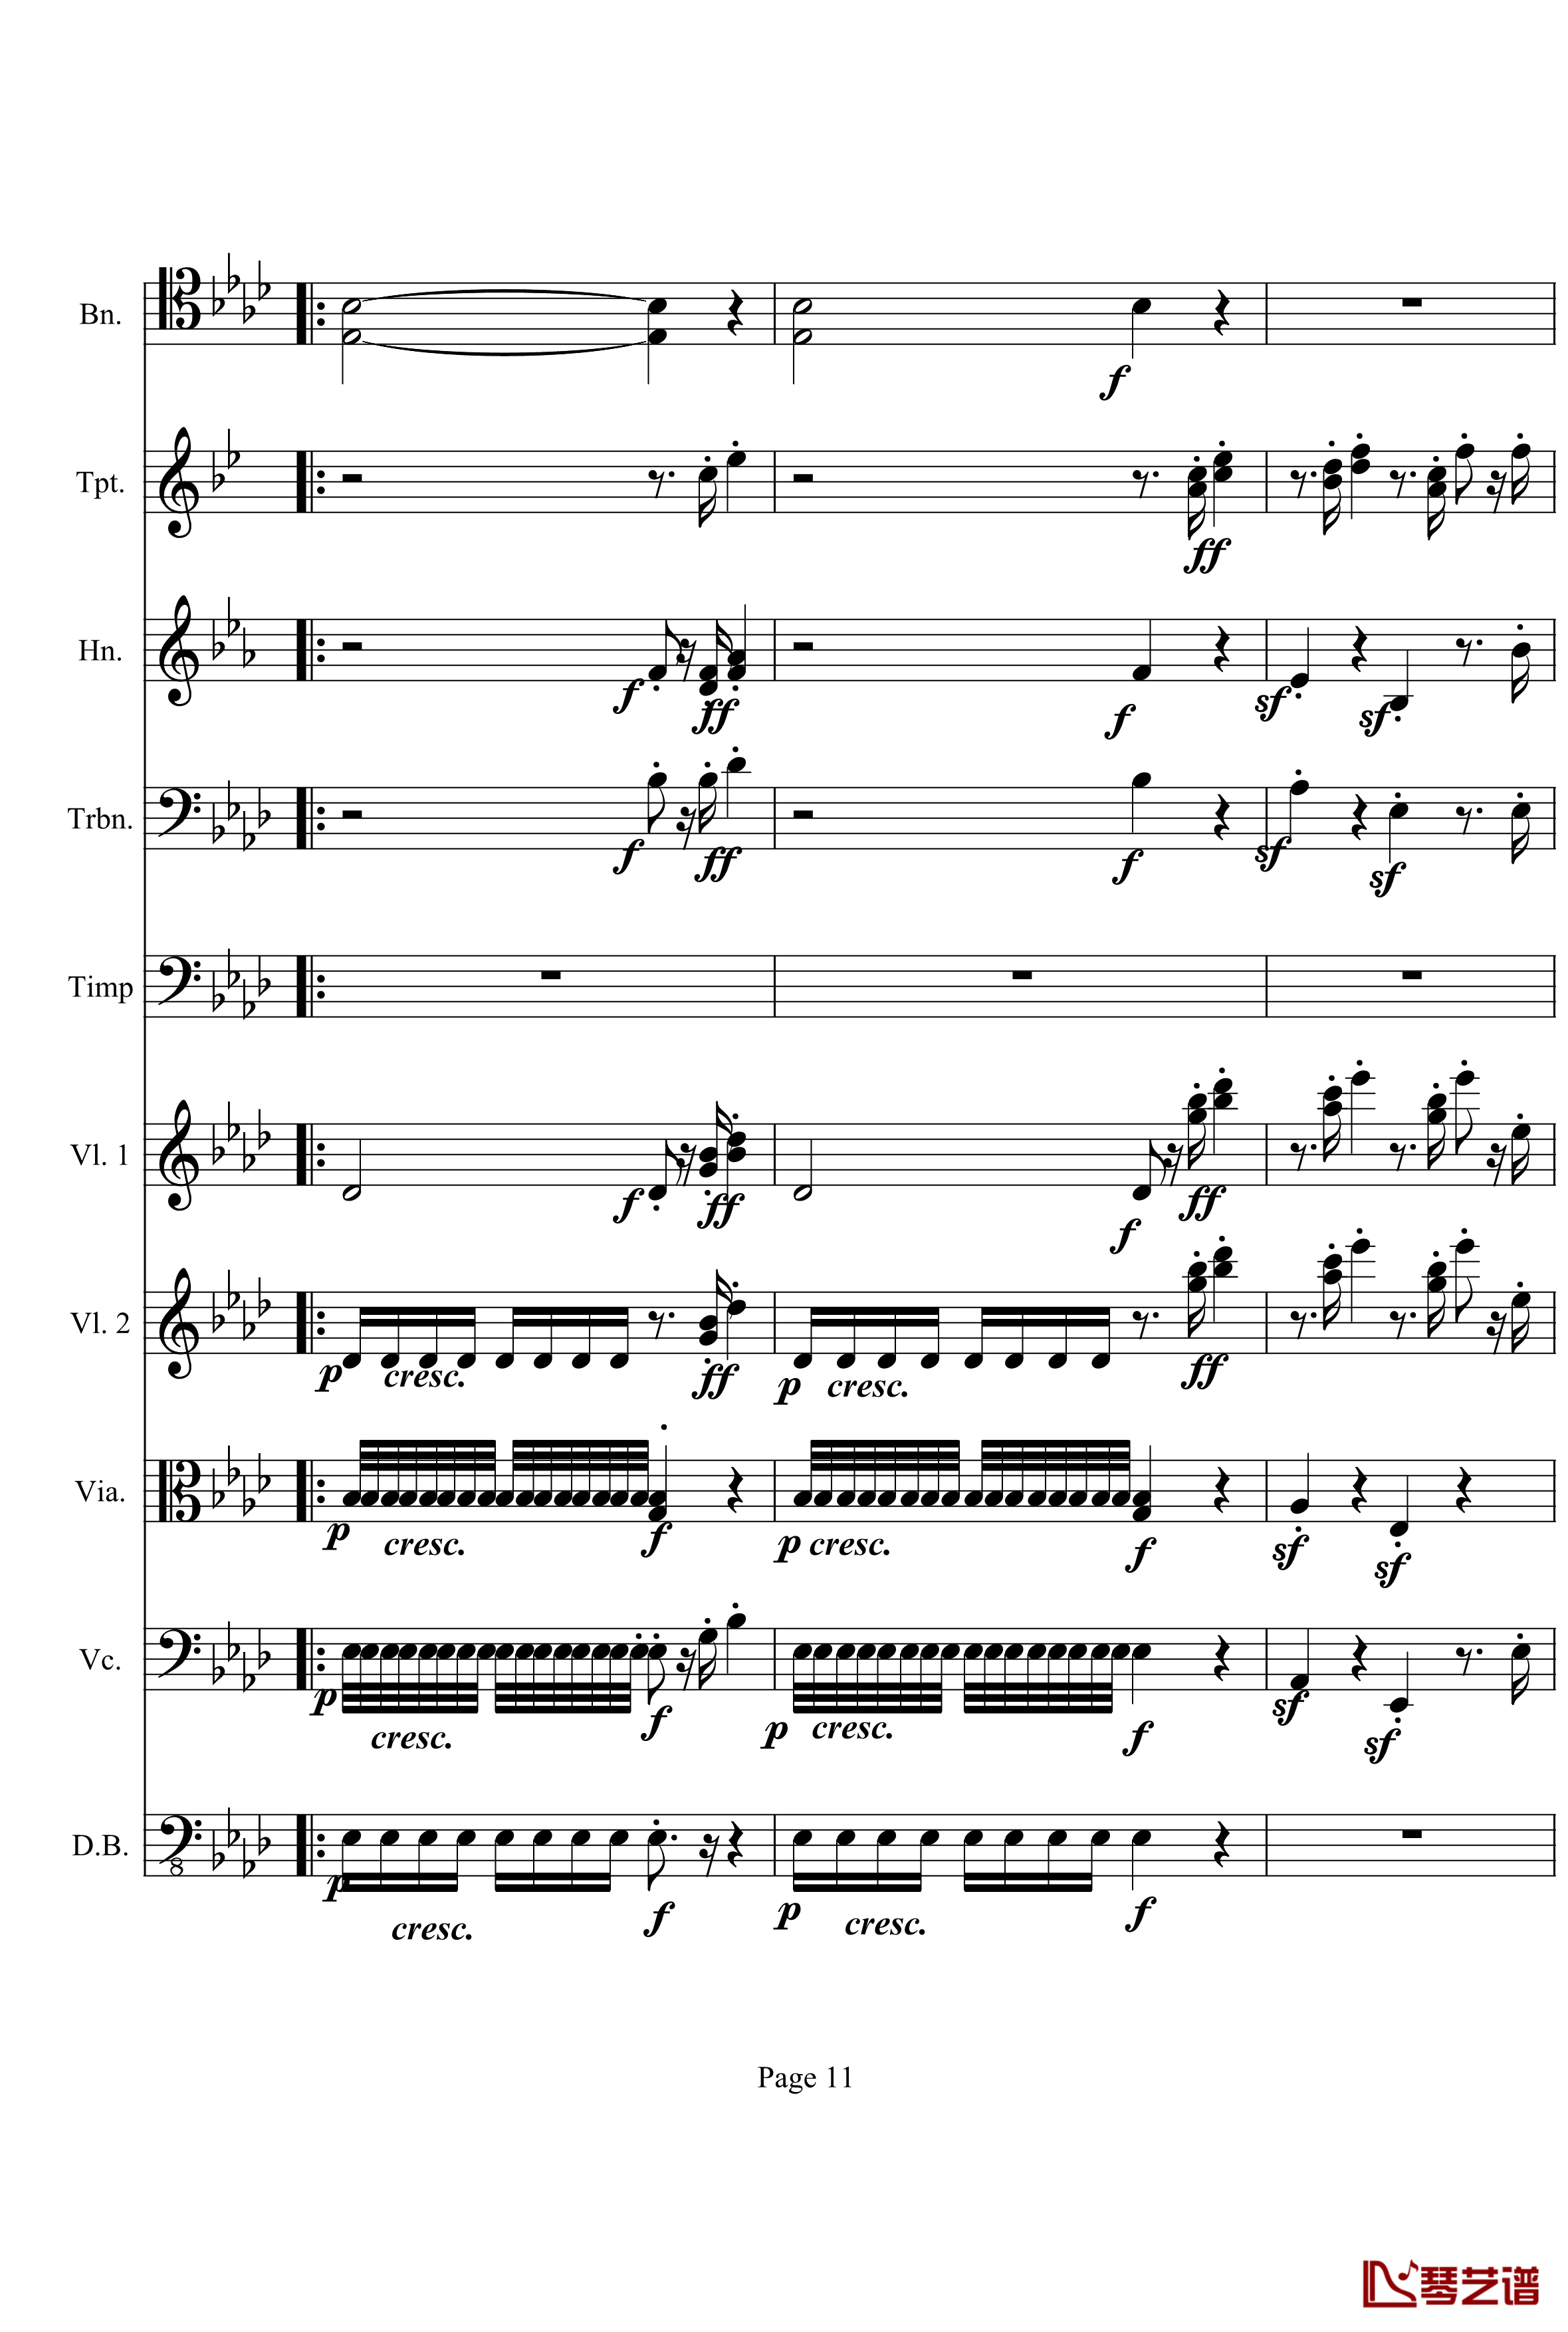 奏鸣曲之交响钢琴谱-第12首-Ⅲ-贝多芬-beethoven11